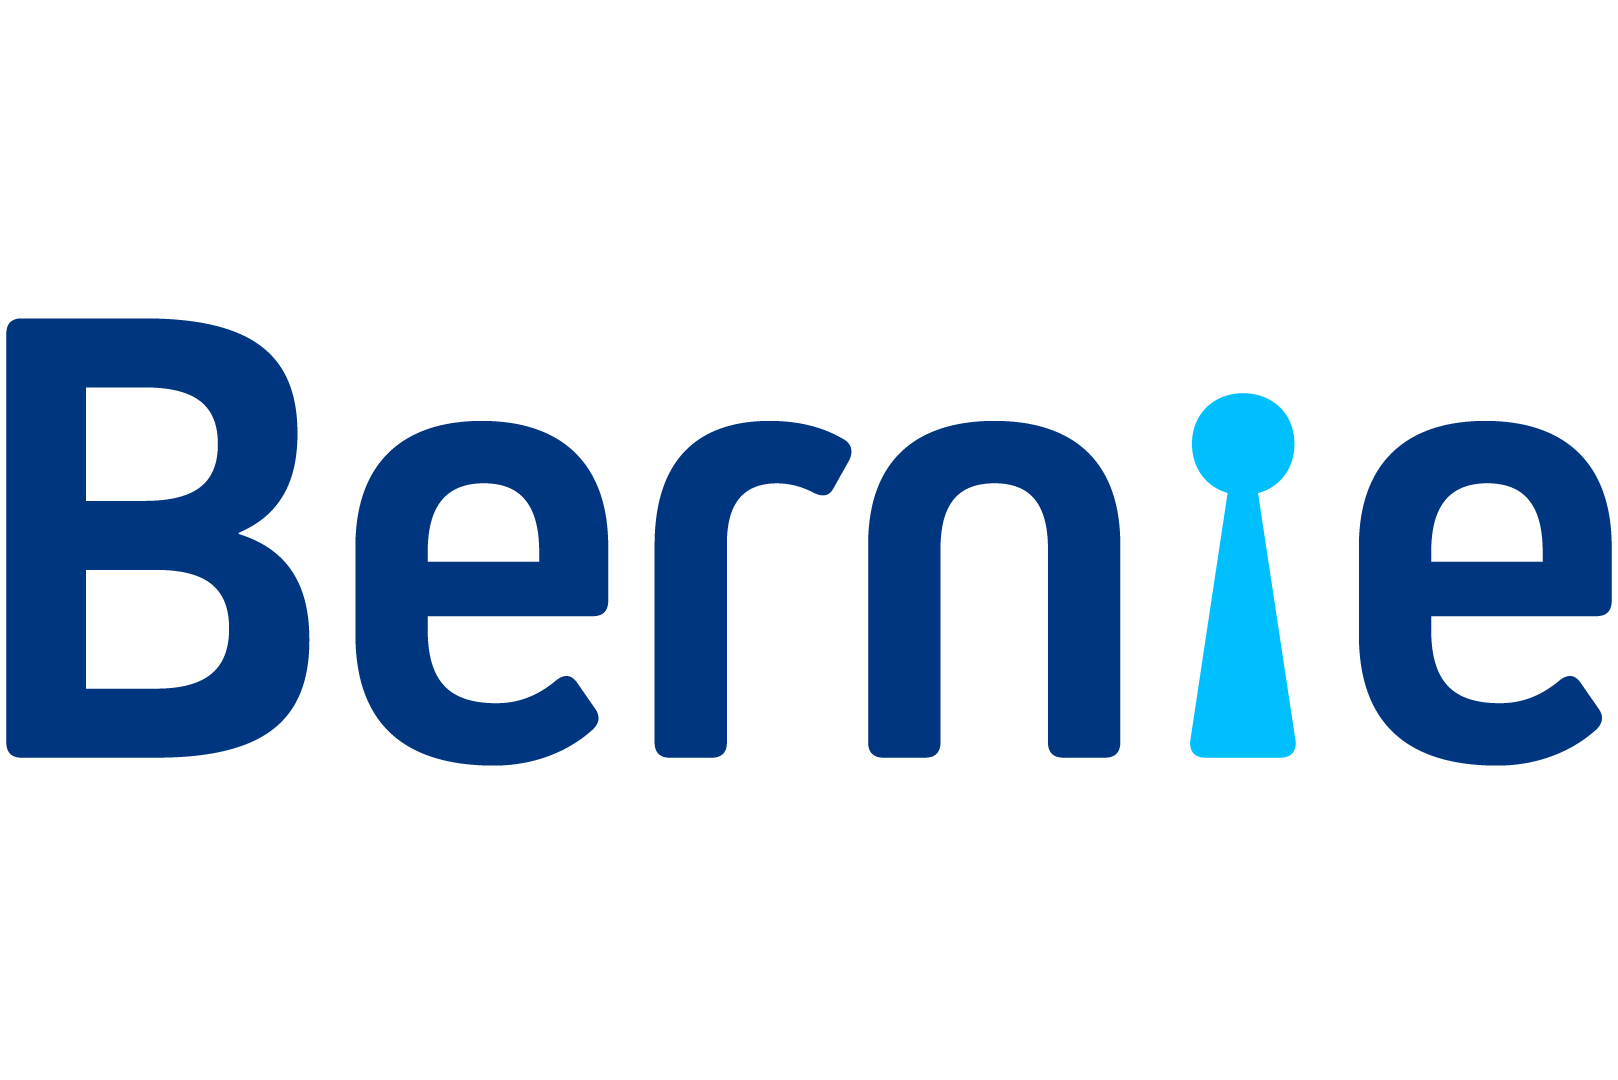 Bernie